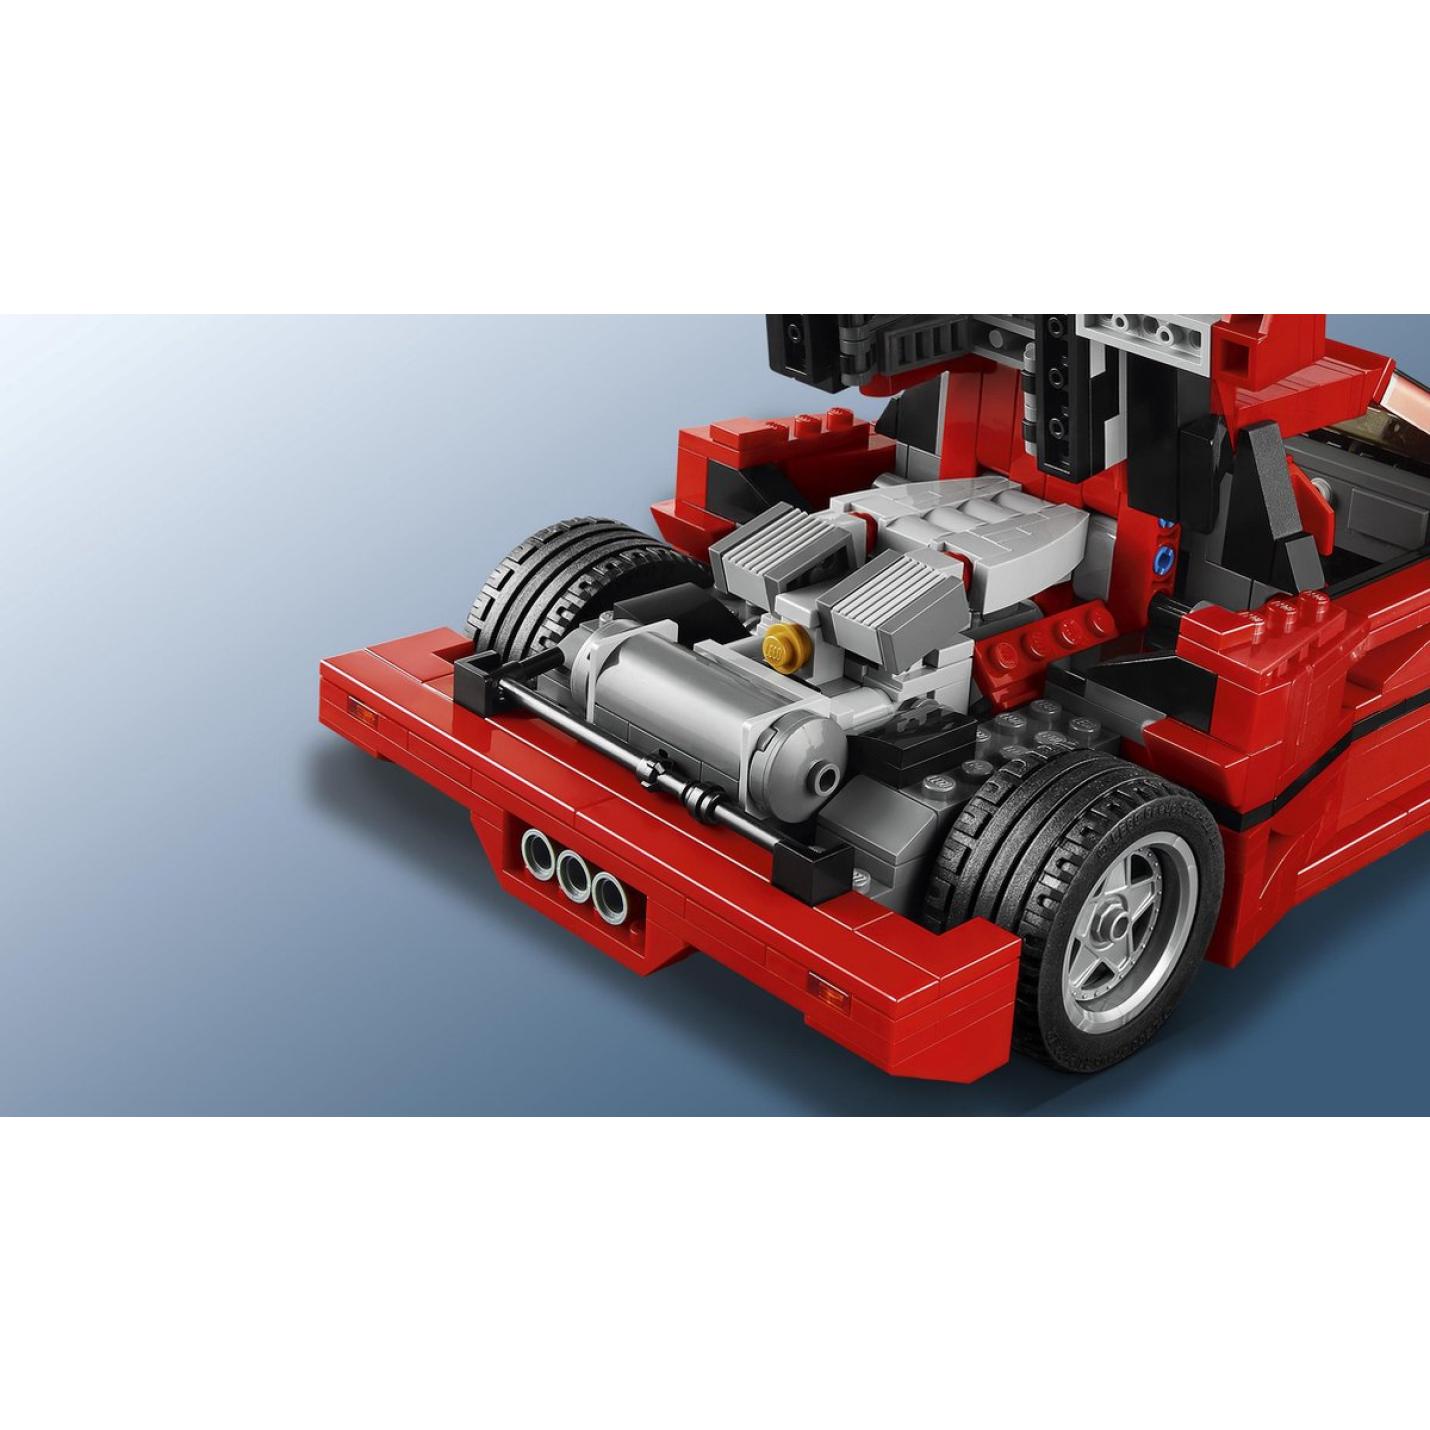 LEGO Creator Expert Ferrari F40 - 10248 10